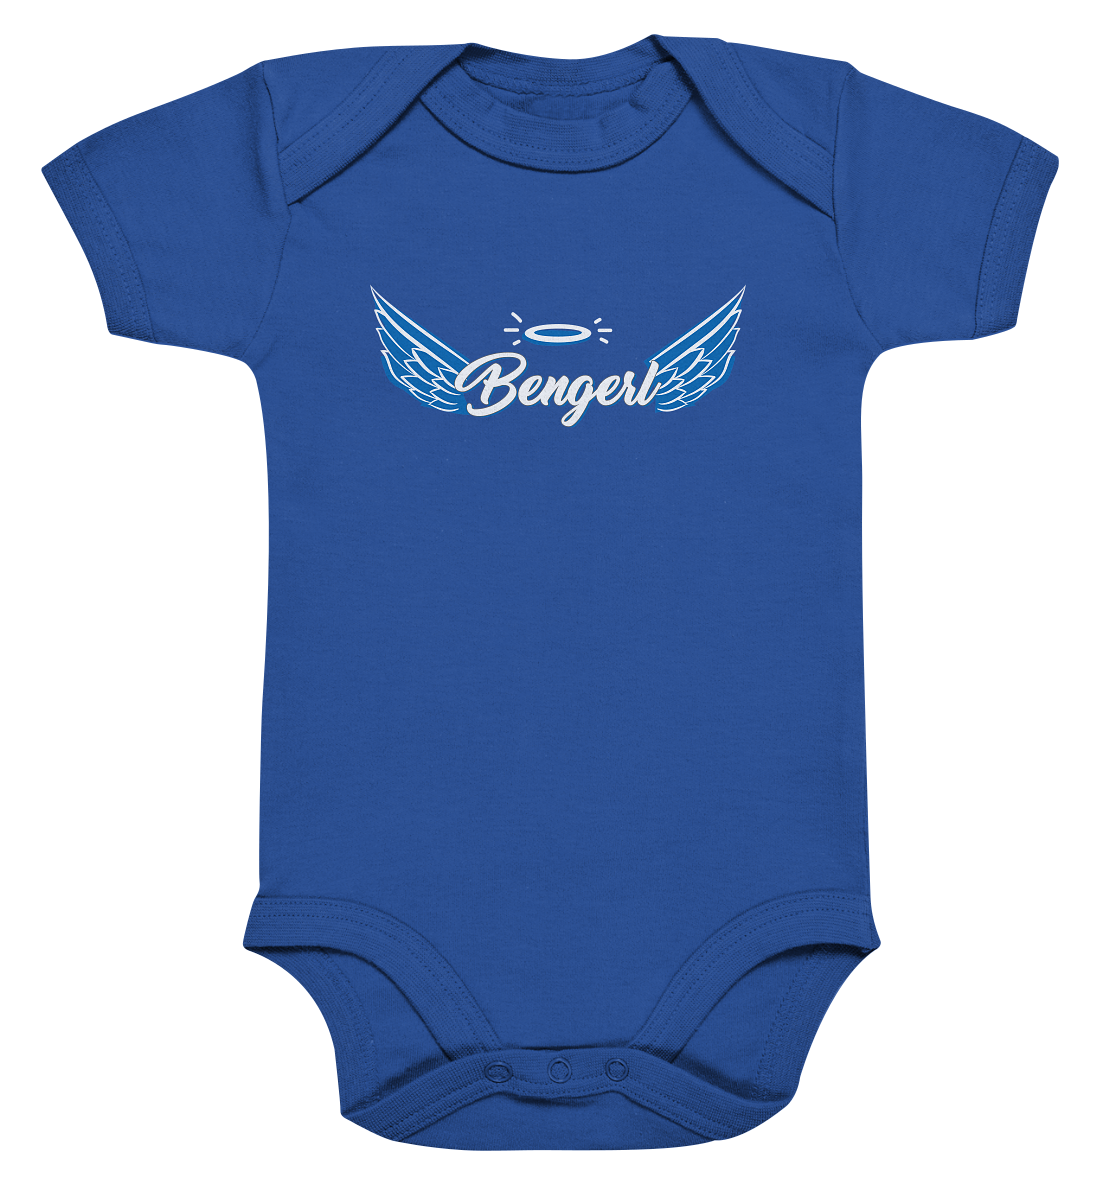 Bengerl  - Baby Bodysuite